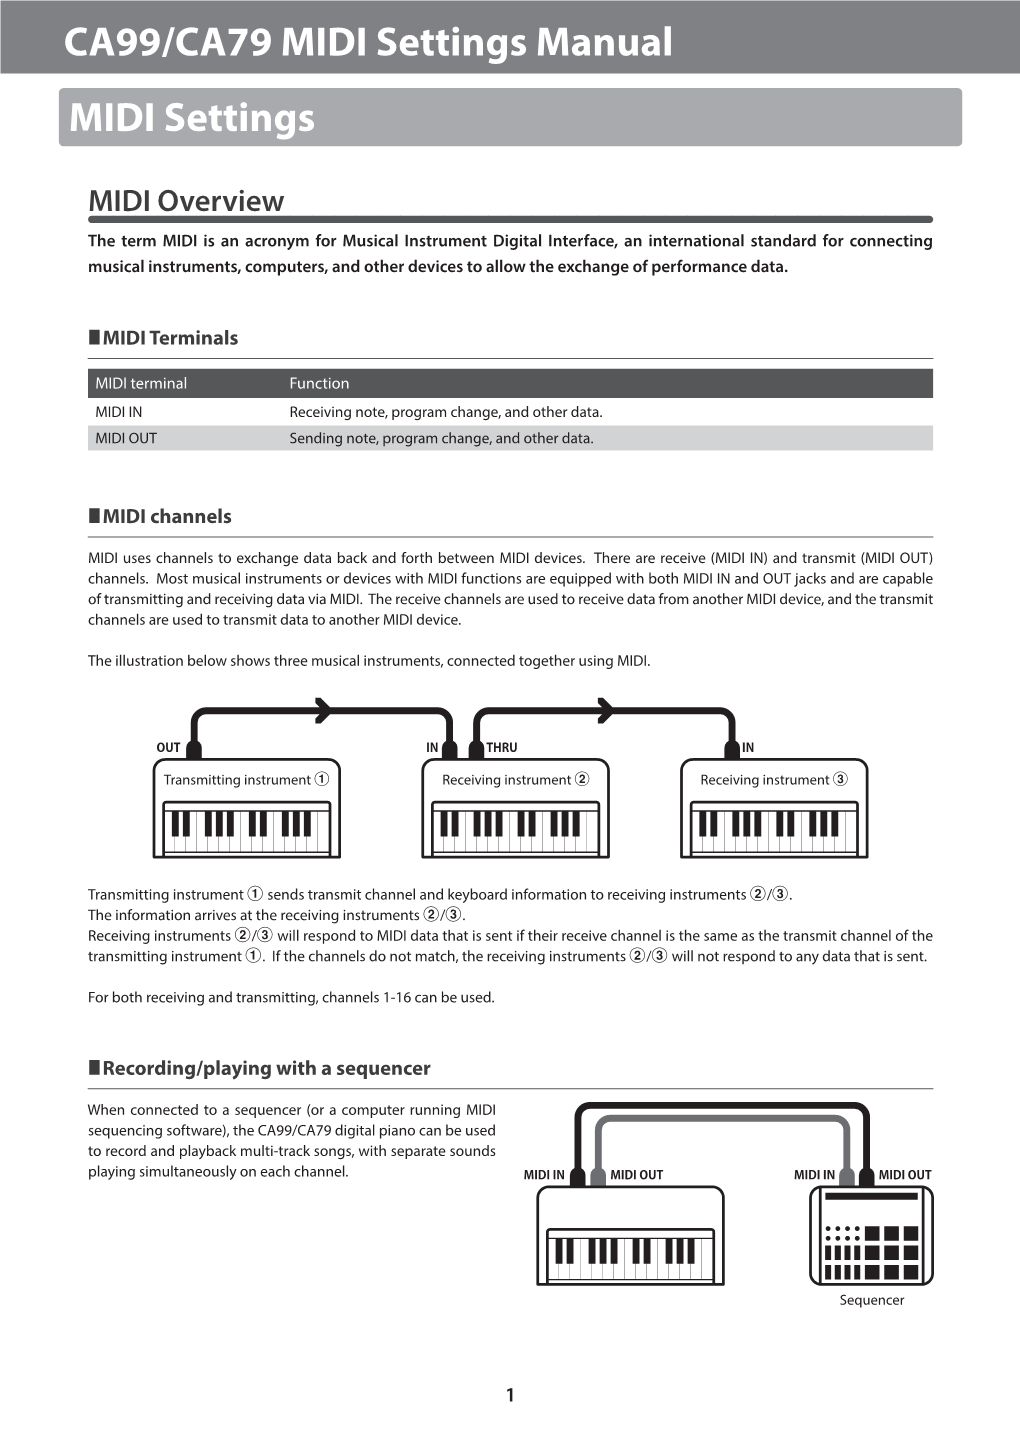 Kawai CA99/CA79 MIDI Settings Manual (English)